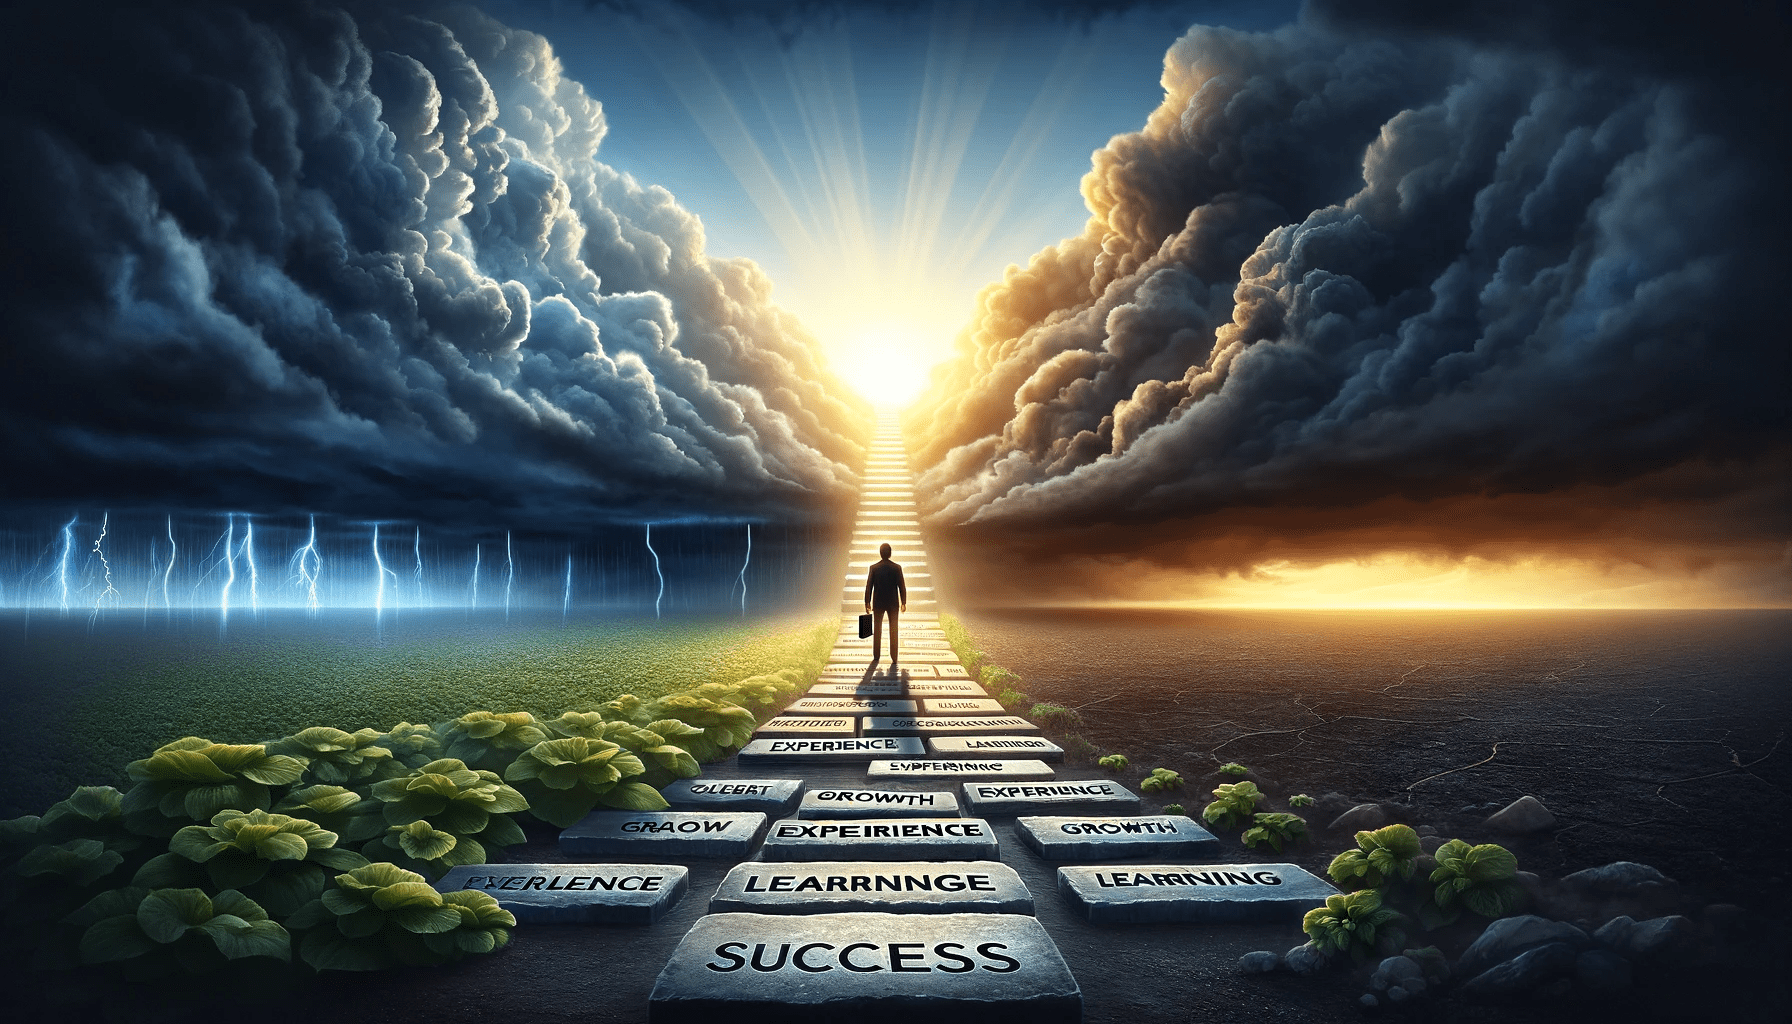 失敗から学ぶ: 成功への道のりを照らすストーリーとコンセプトを。